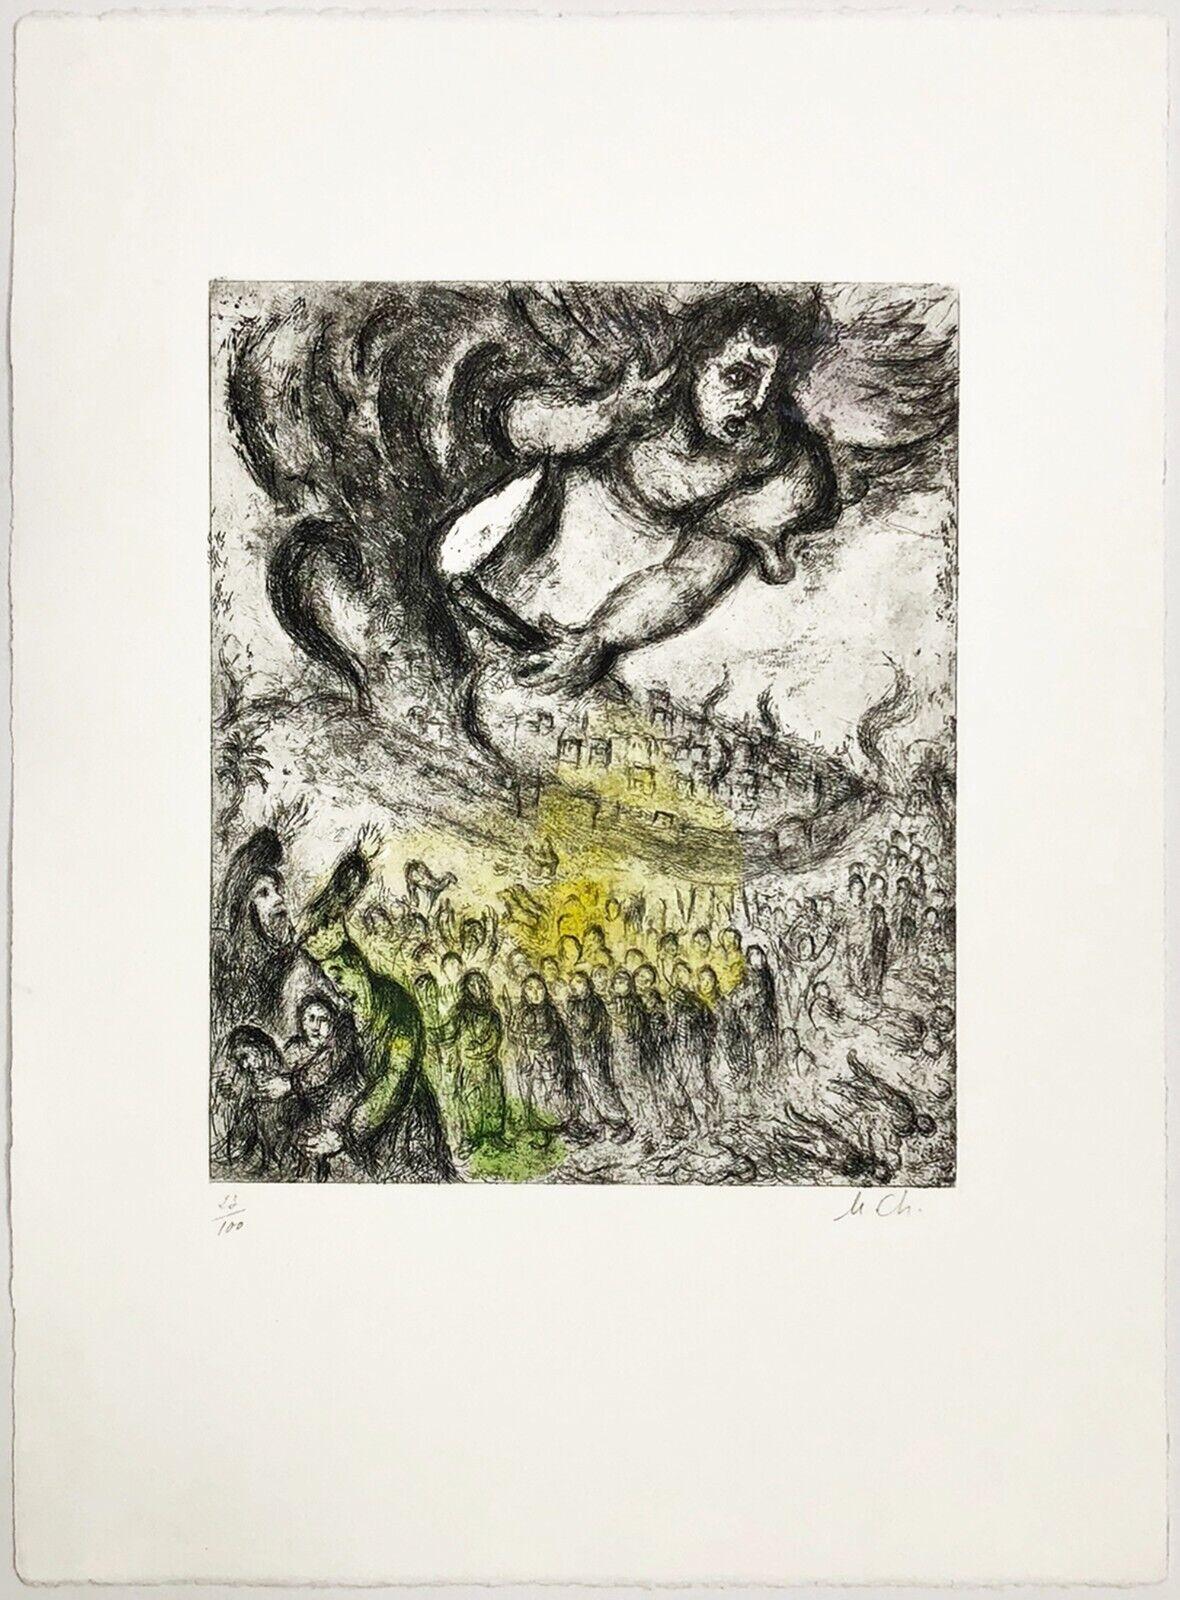 PRISE DE JERUSALEM (CRAMER 30) - Surréalisme Print par Marc Chagall